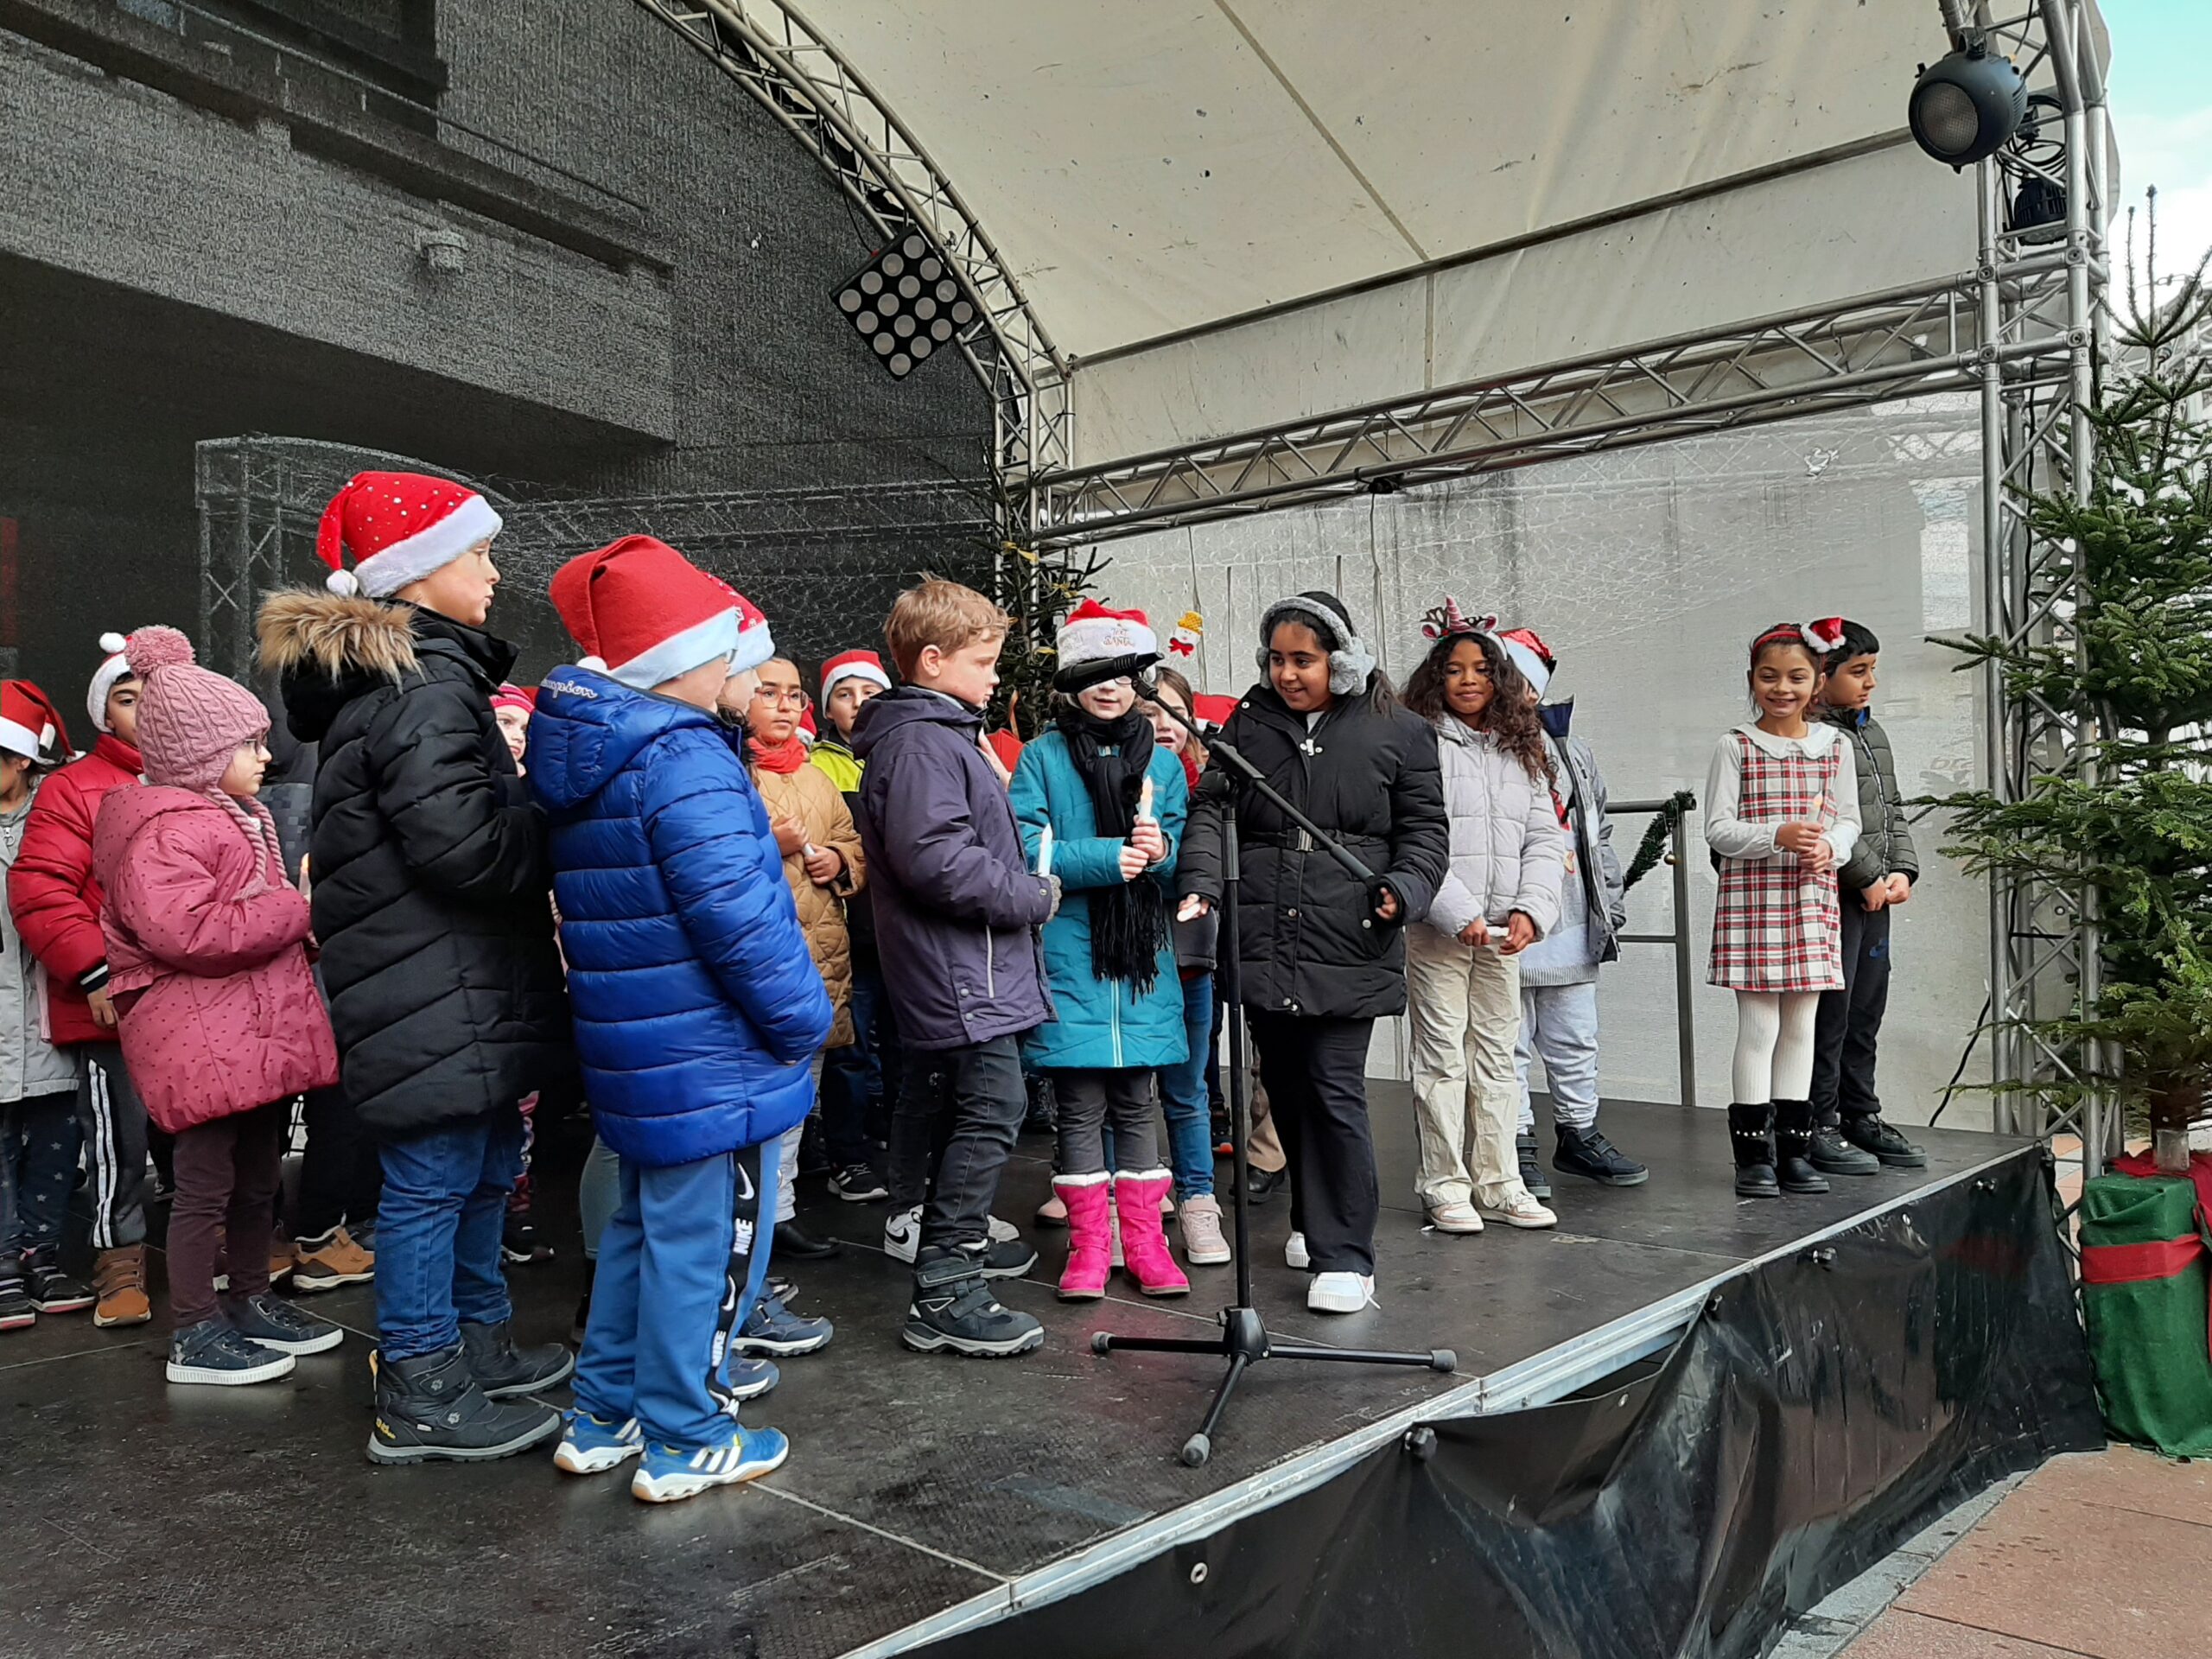 Schülerinnen und Schüler beim Auftritt auf der offenen Bühne auf dem Weihnachtsmarkt in Pforzheim